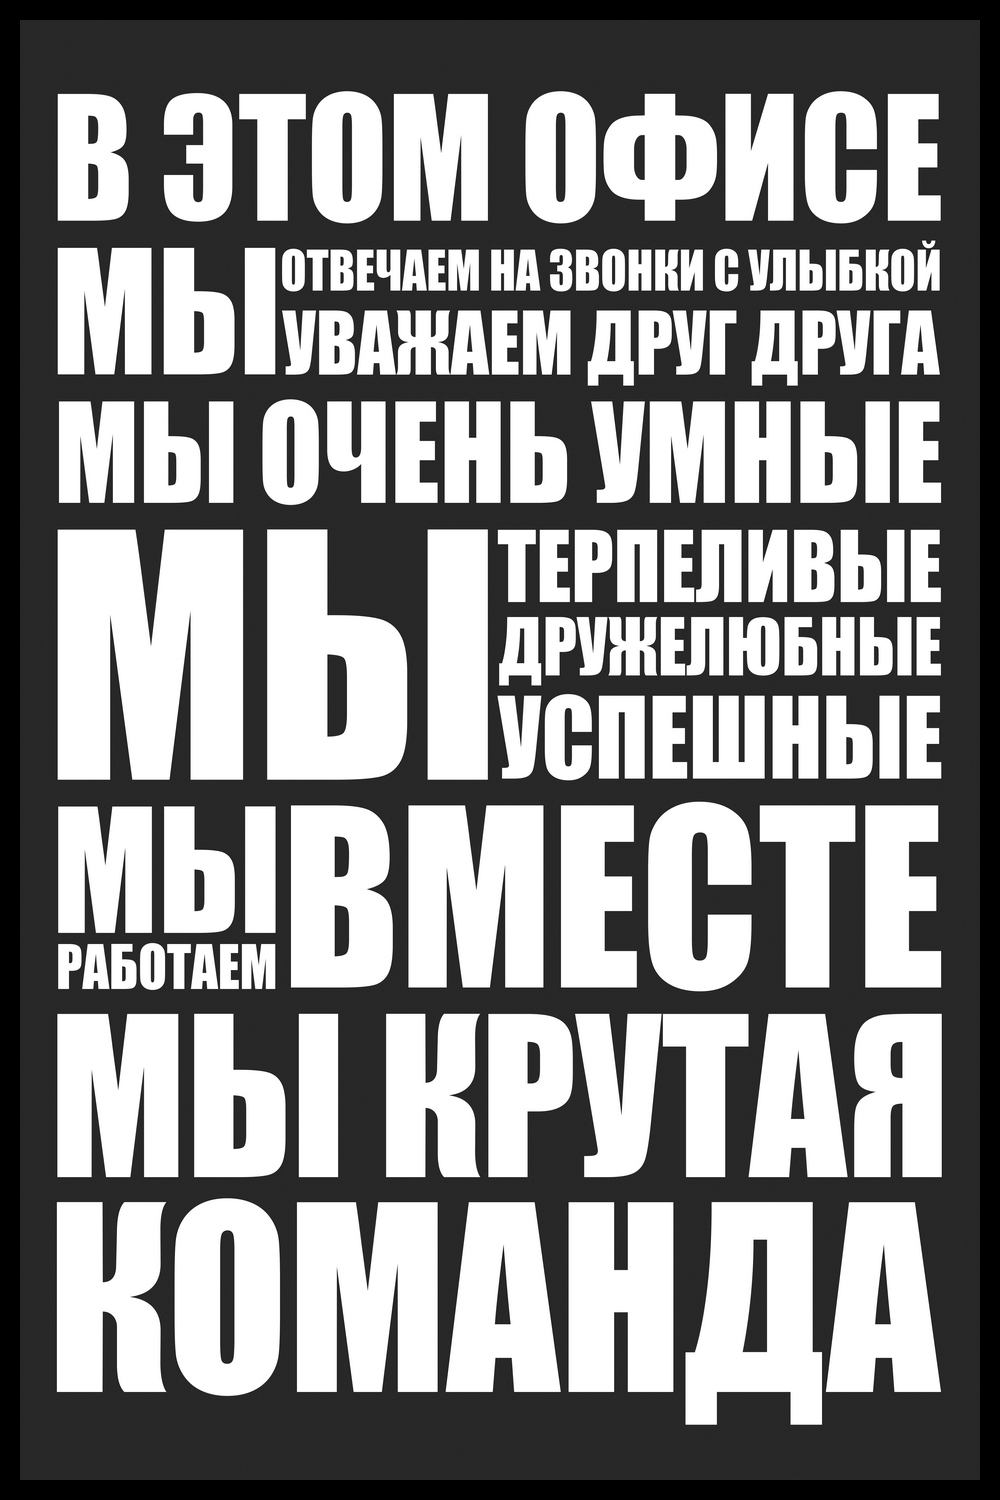 Купить постеры в Офис для интерьера в «Ананас 🍍 Постер» в Москве